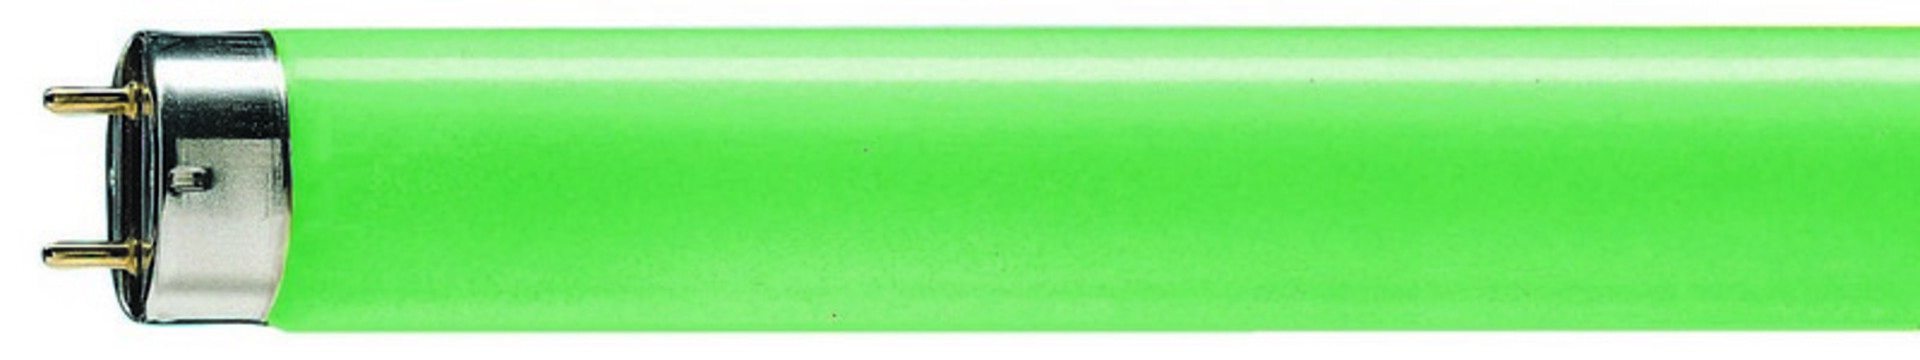 Philips lineární MASTER TL-D 36W/ 17 G13 zelená